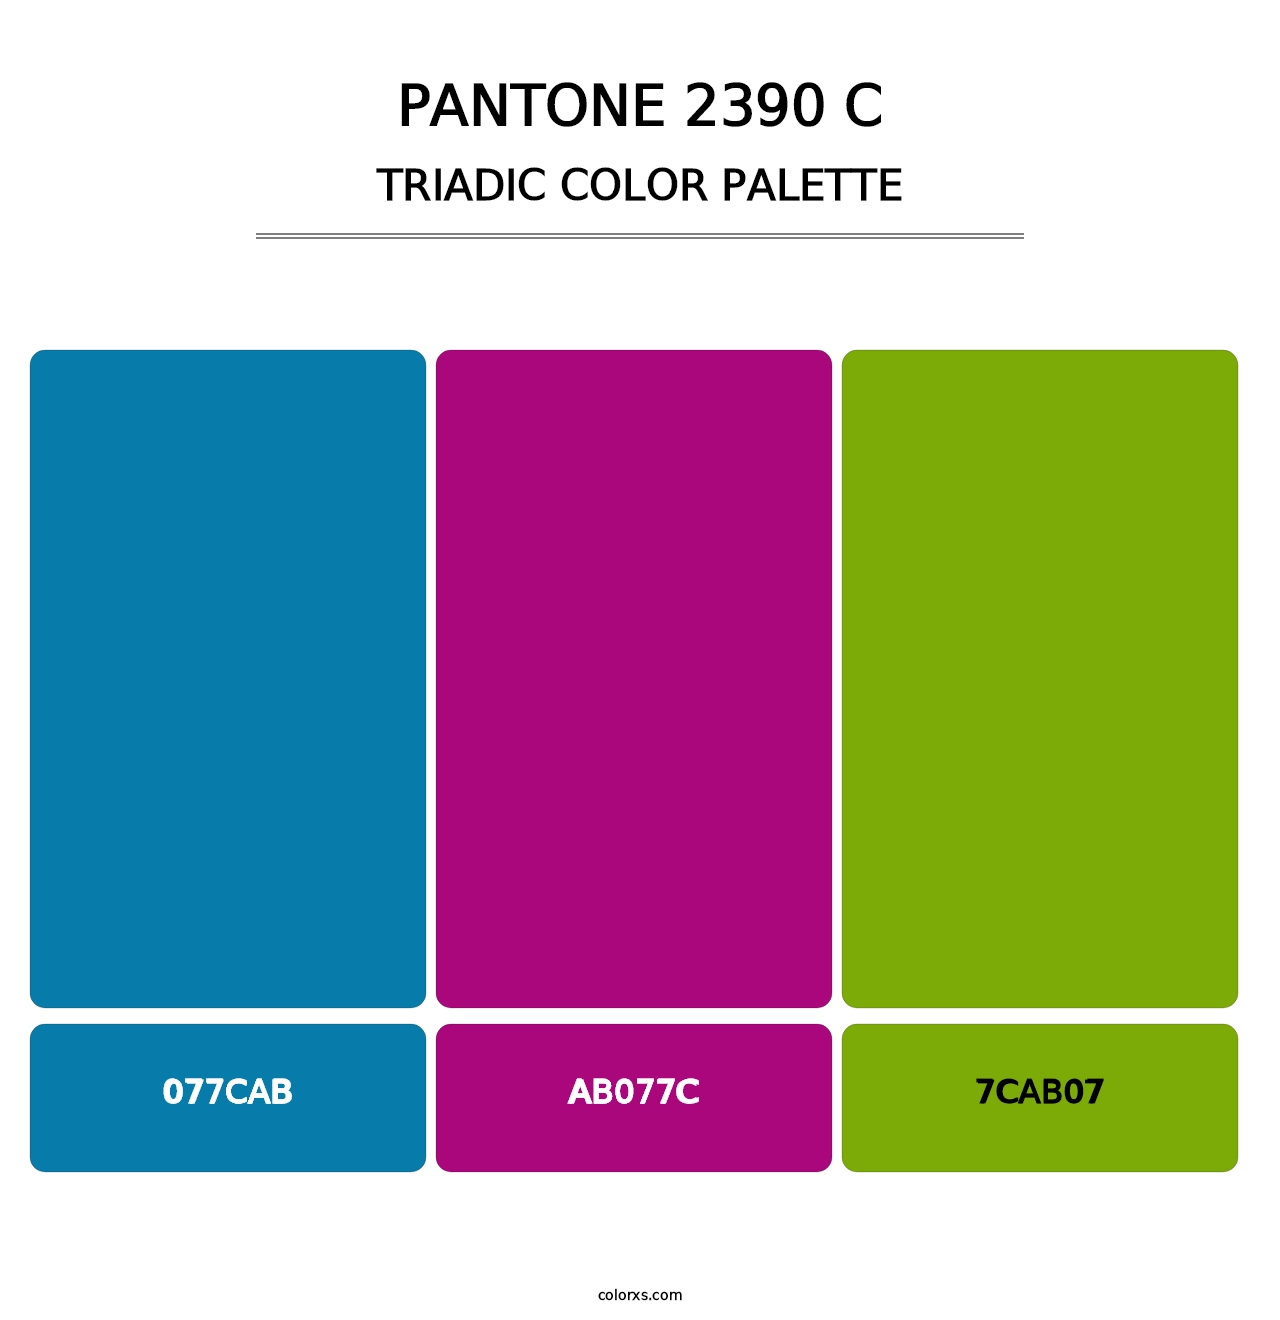 PANTONE 2390 C - Triadic Color Palette